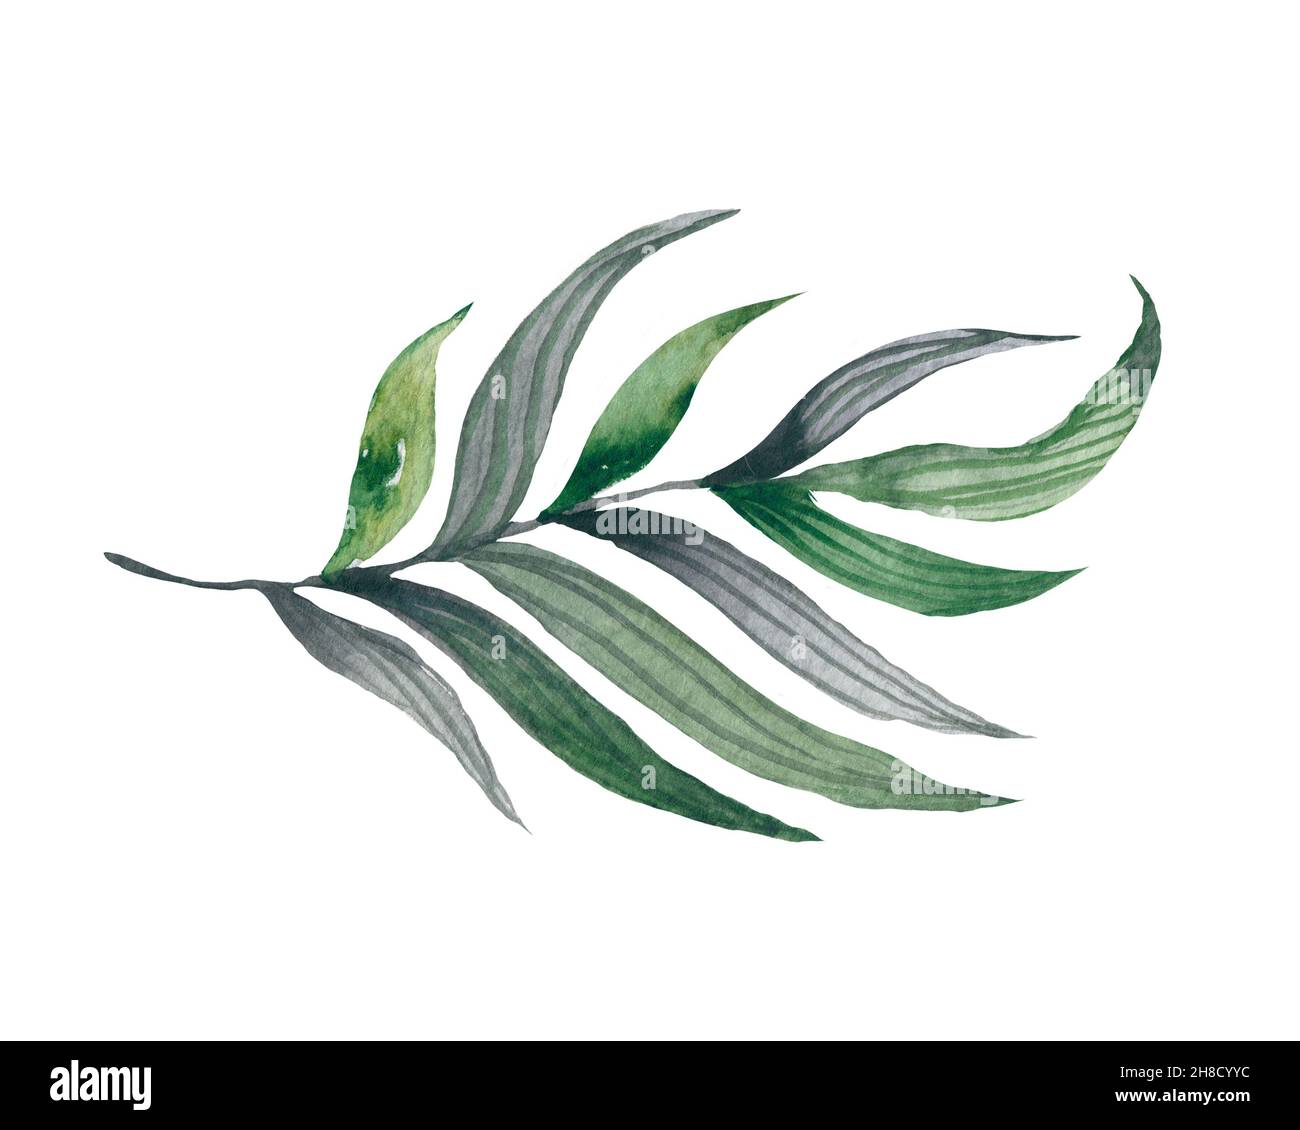 Quatre feuilles tropicales. Illustration de feuilles dessinées à la main en aquarelle. Banque D'Images